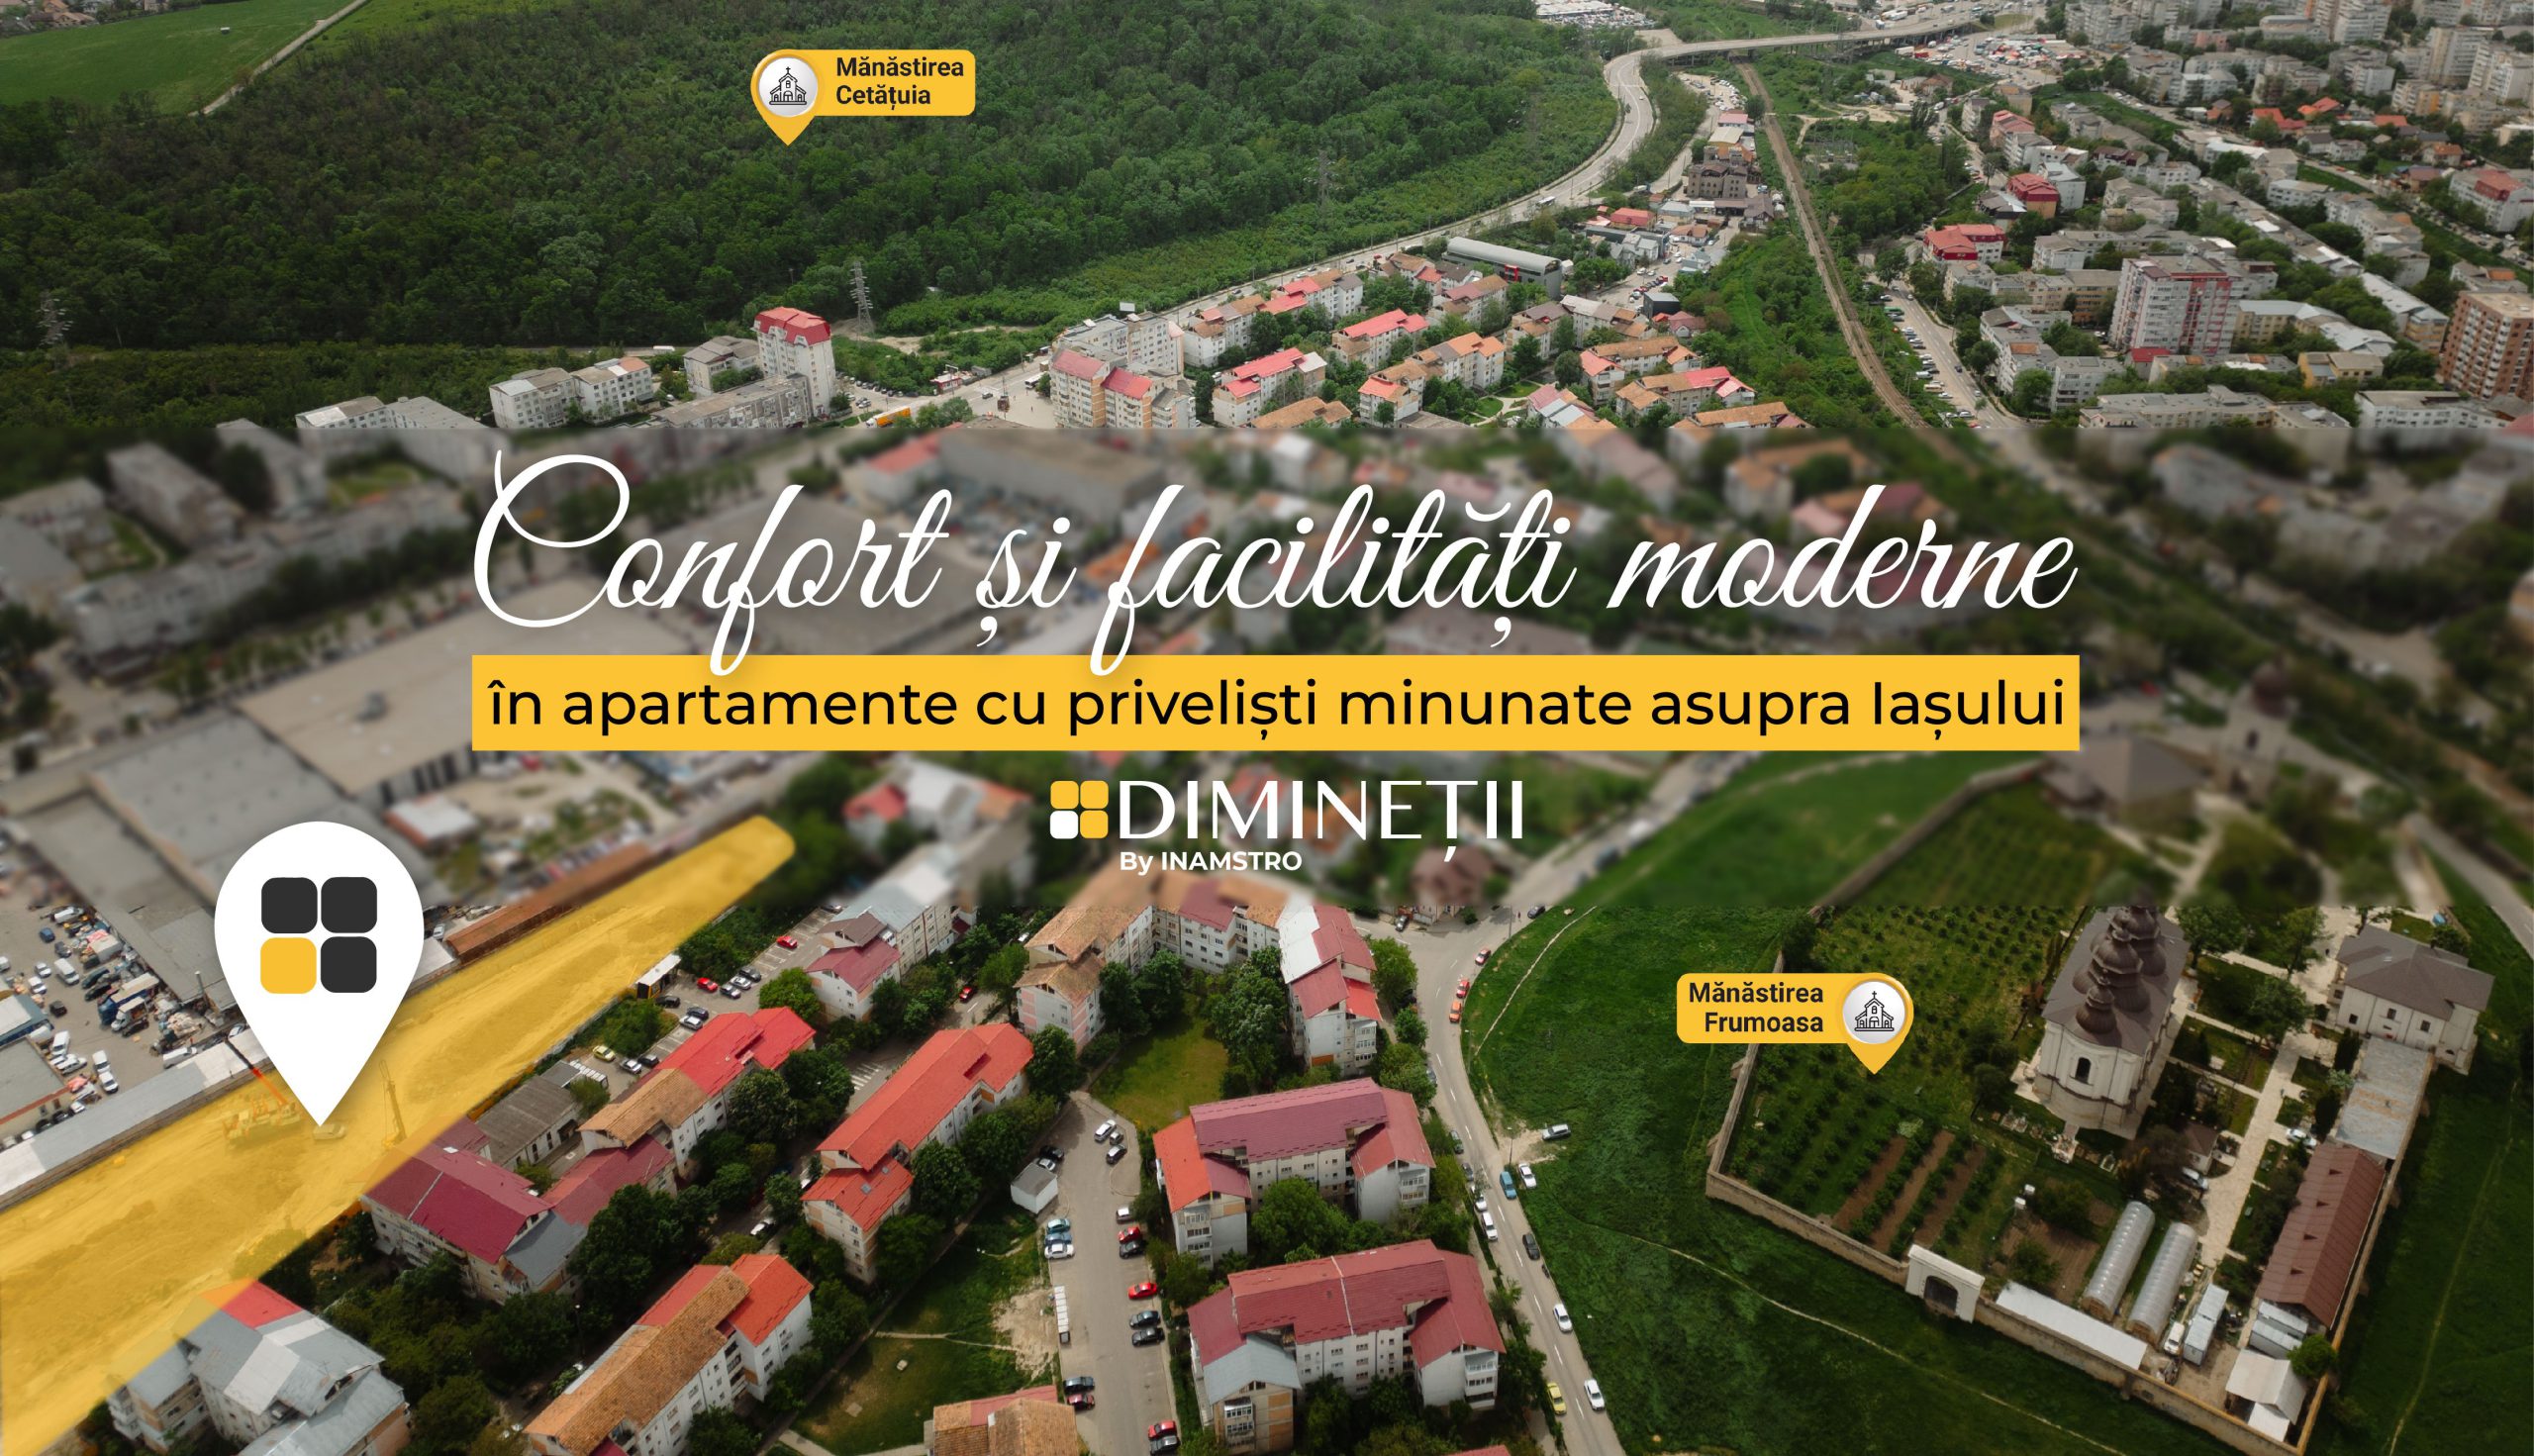  Complexul rezidențial DIMINEȚII – Alegerea perfectă pentru o locație pitorească și cu priveliști frumoase din orice apartament (P)